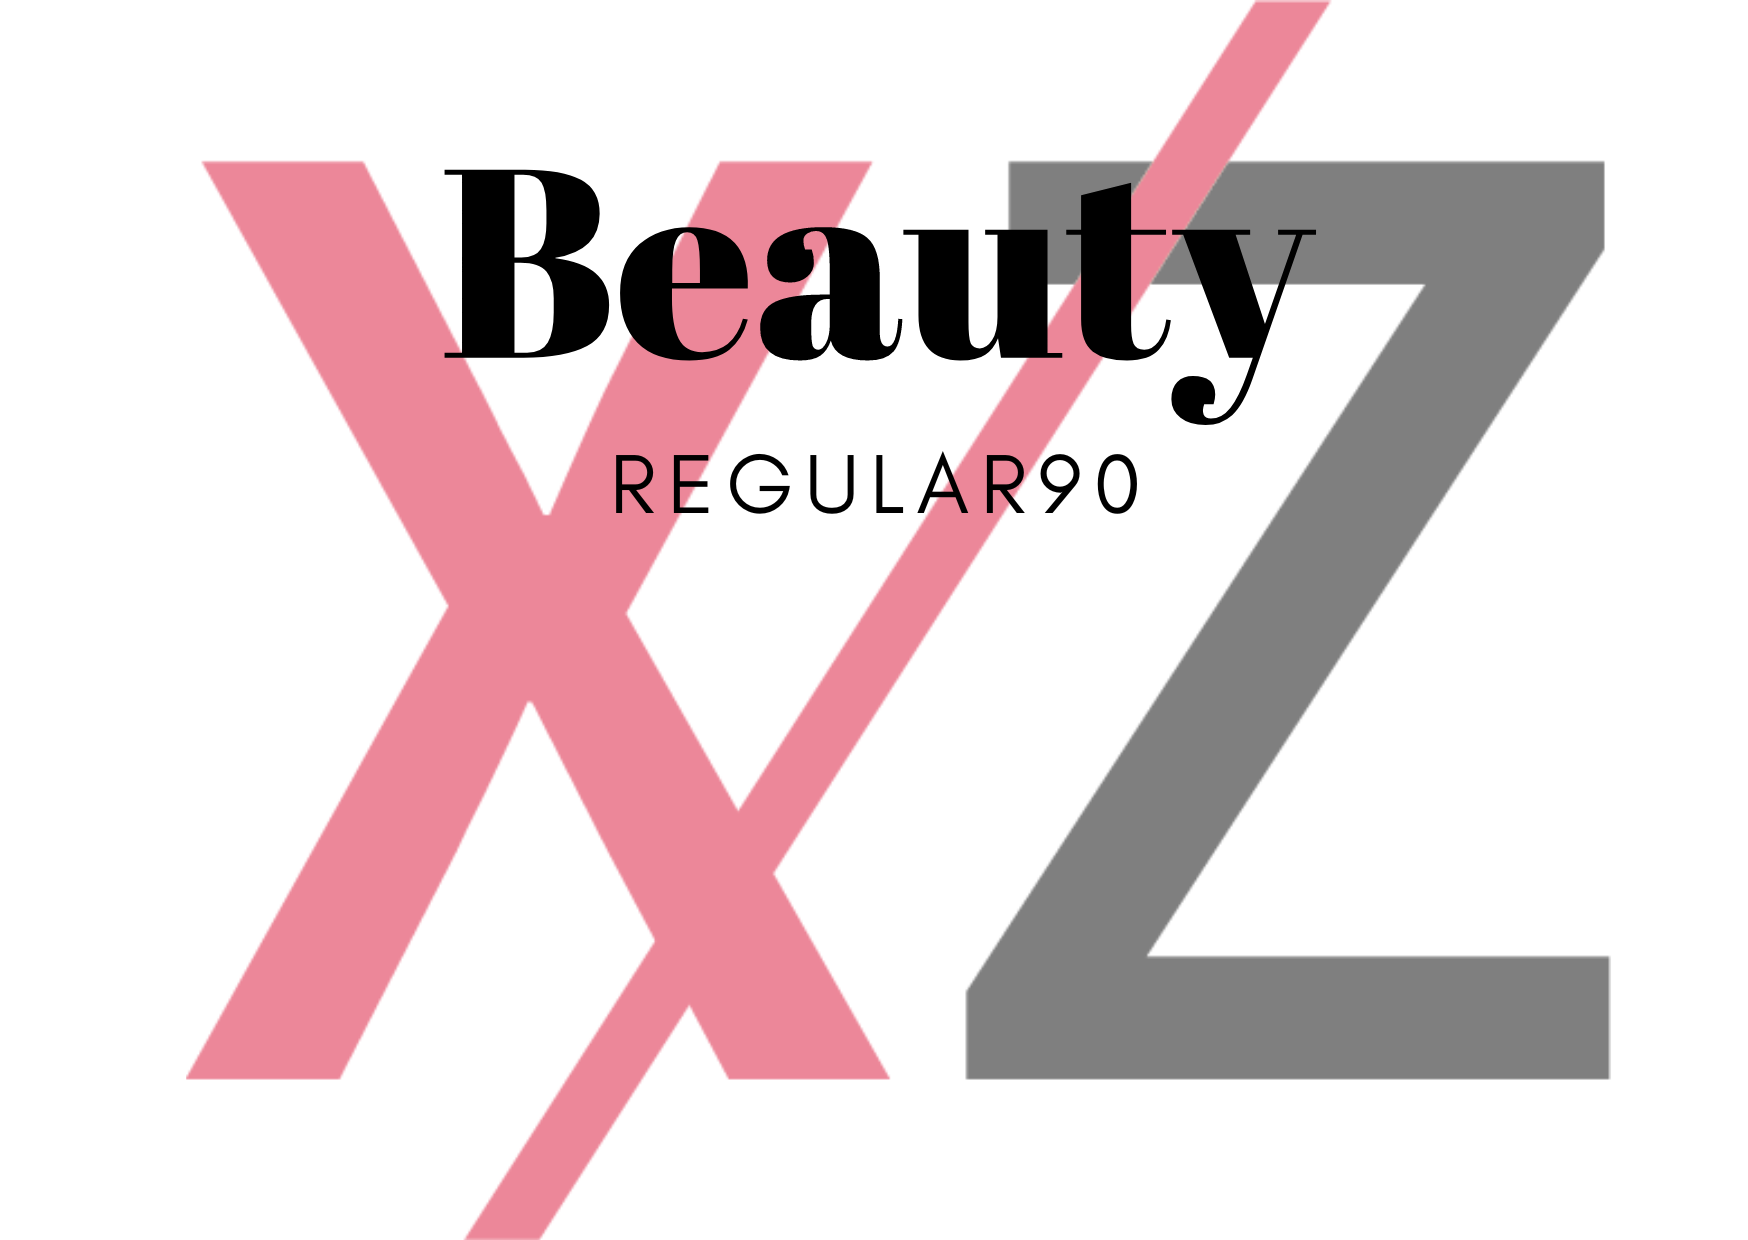 XZパーソナルジム&鍼灸ボディケア 〈Beauty〉レギュラーコース90分のメニュー画像